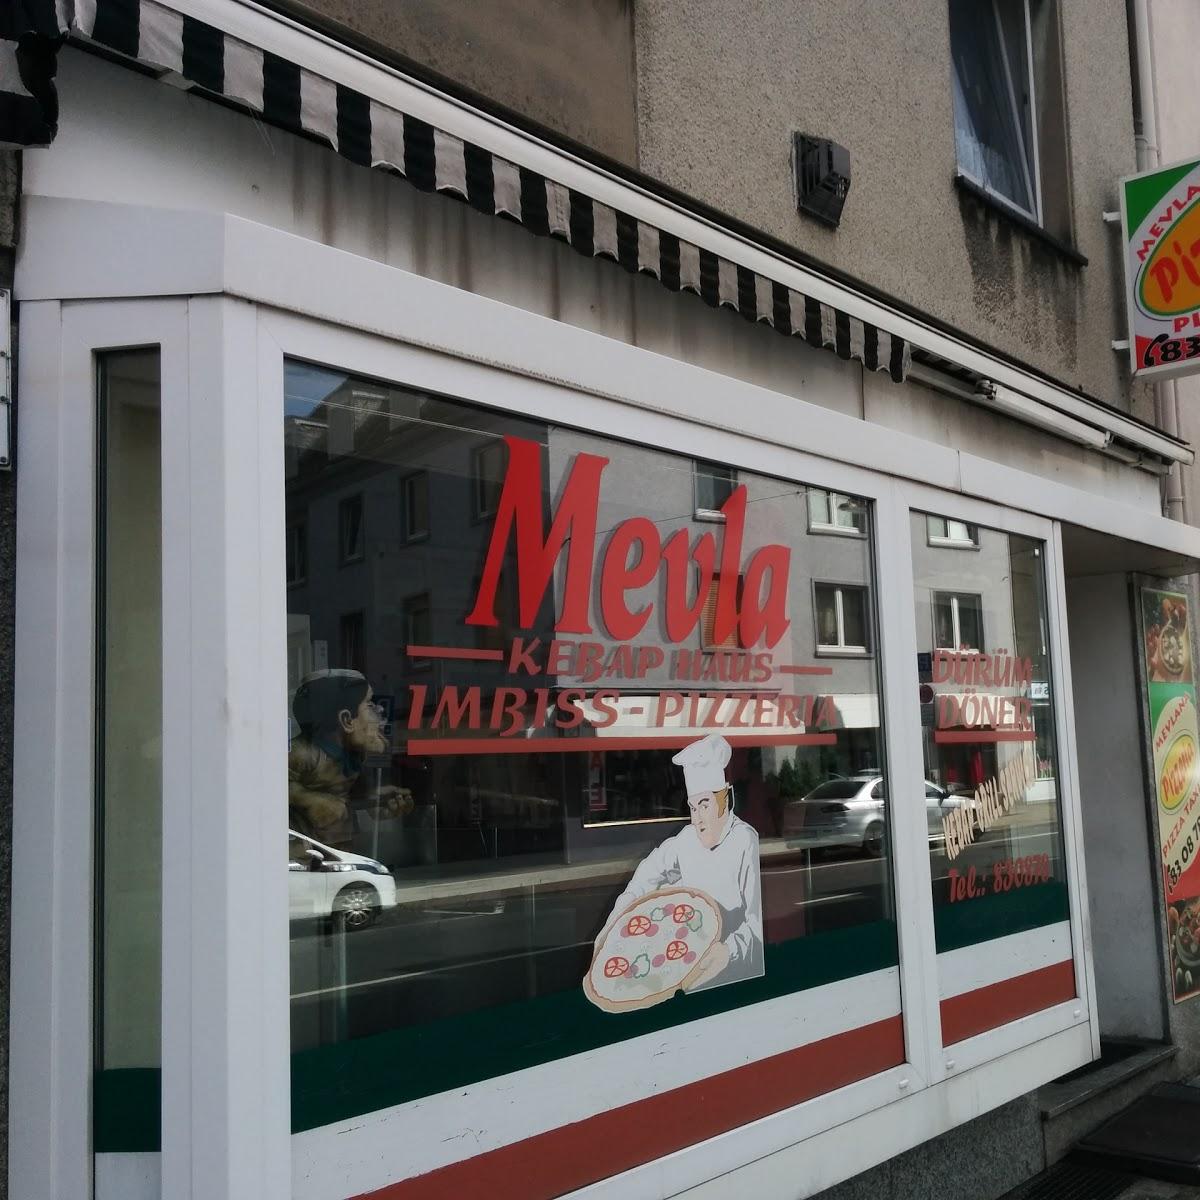 Restaurant "Pizzeria Mevlana" in Schwelm